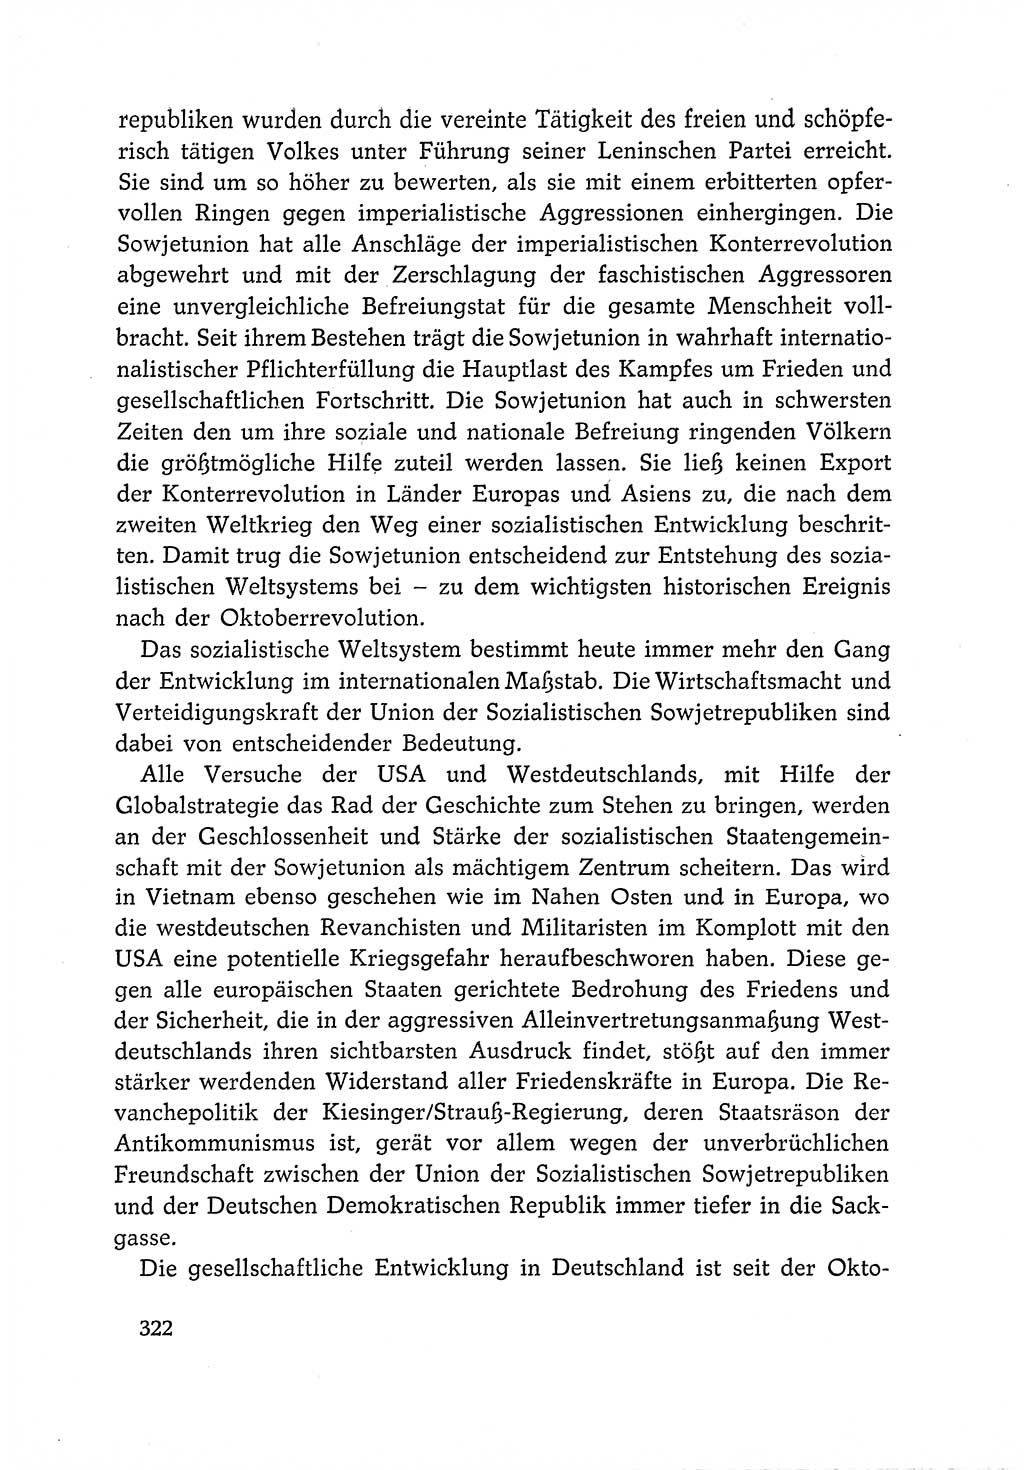 Dokumente der Sozialistischen Einheitspartei Deutschlands (SED) [Deutsche Demokratische Republik (DDR)] 1966-1967, Seite 322 (Dok. SED DDR 1966-1967, S. 322)